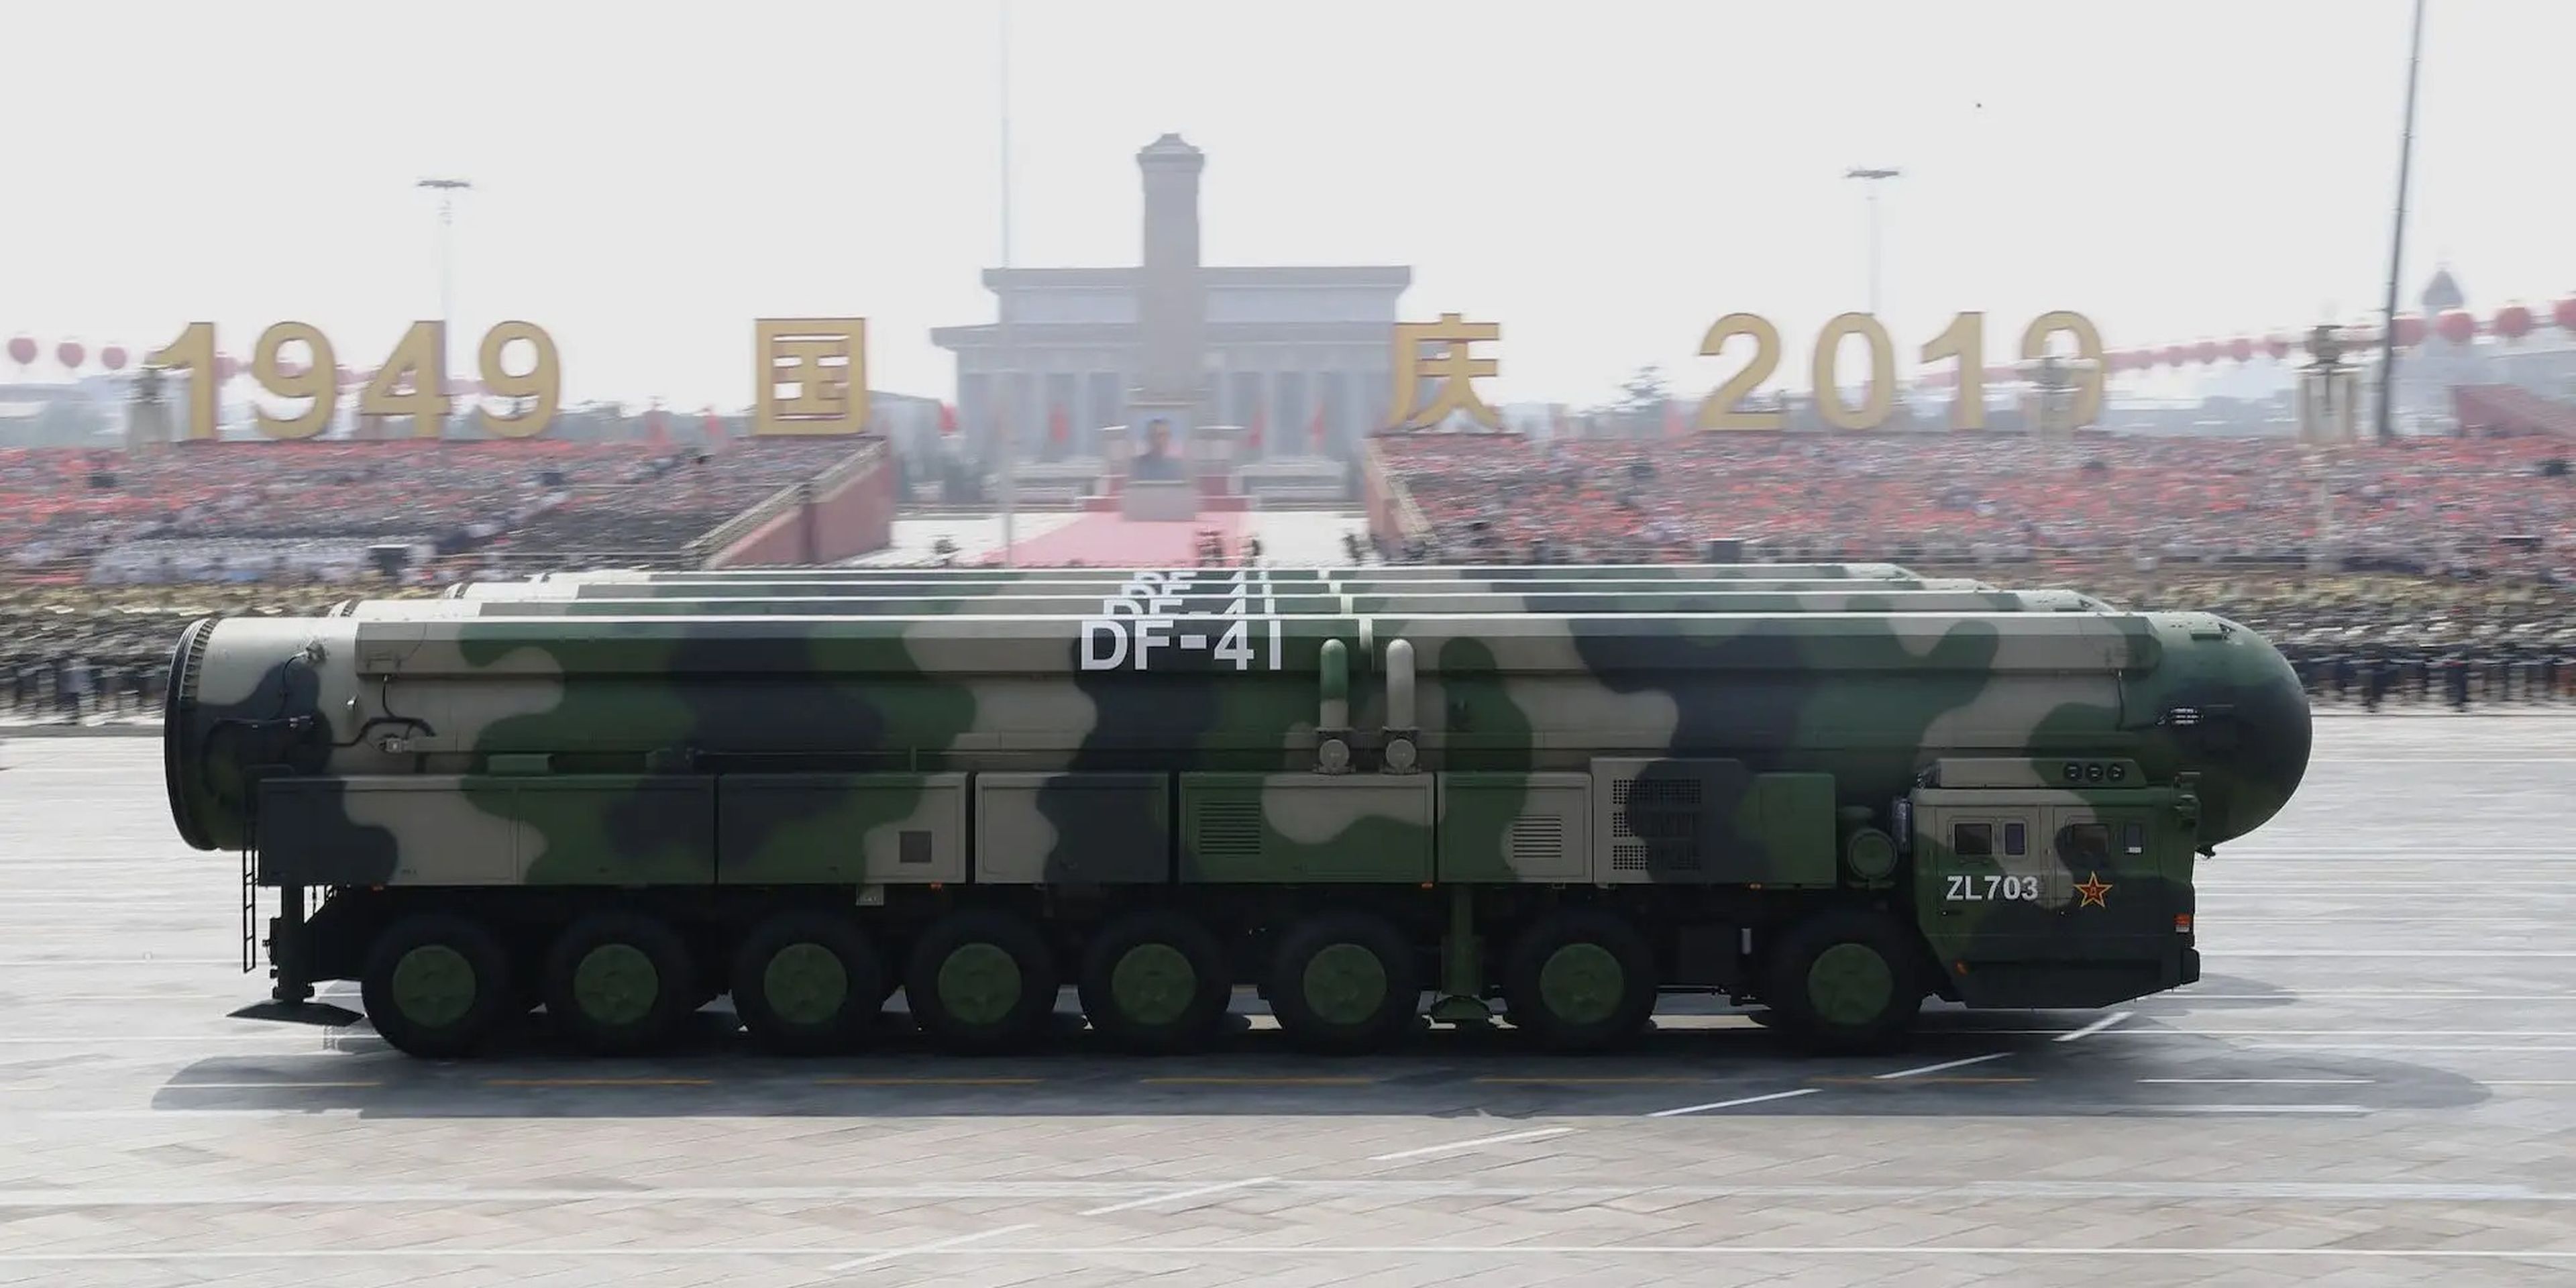 Misiles balísticos intercontinentales DF-41 chinos en un desfile militar en Pekín el 1 de octubre de 2019.